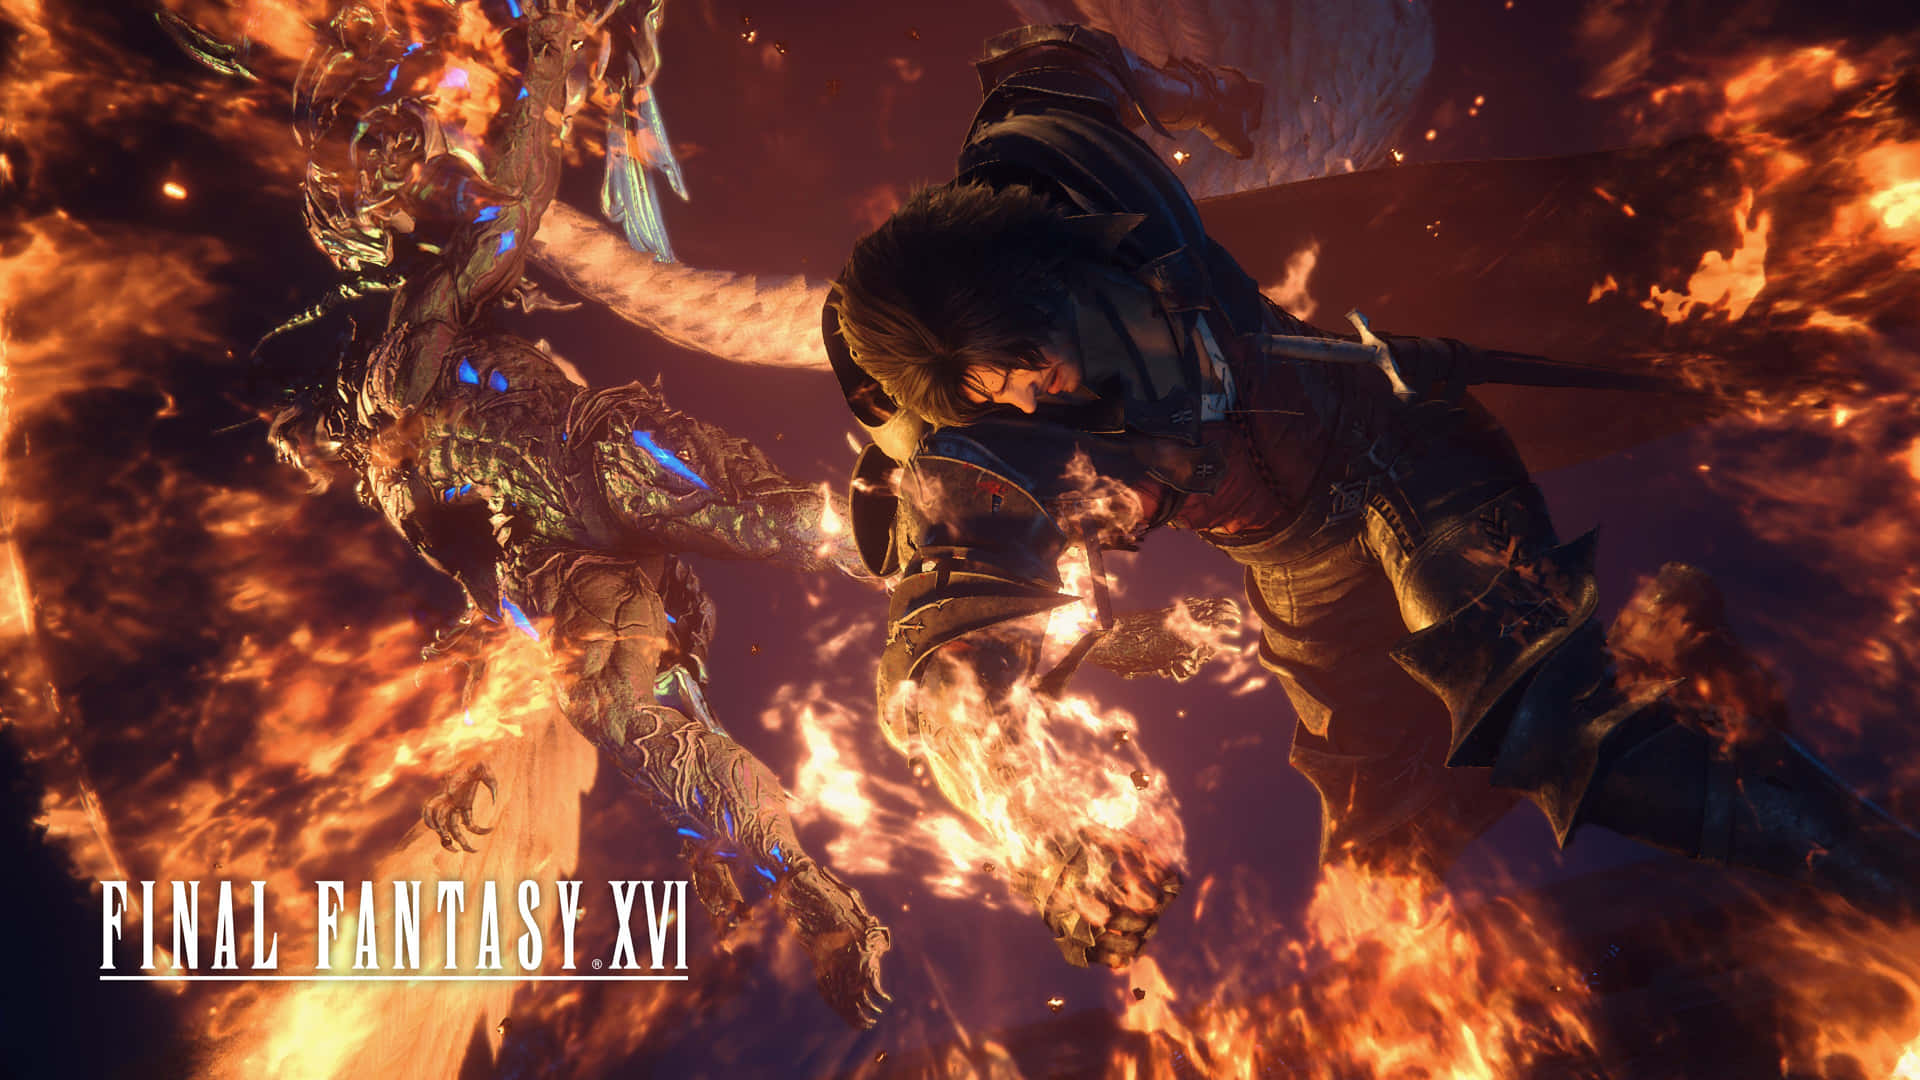 Final Fantasy X V I Epic Battle Wallpaper